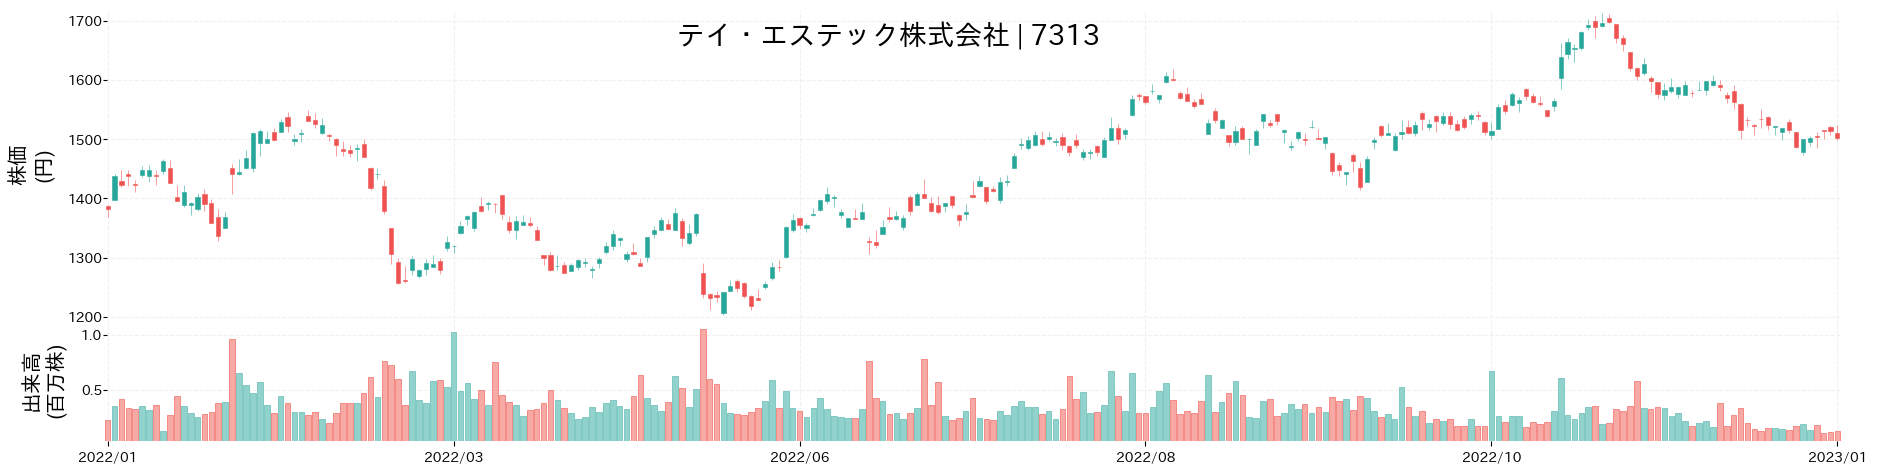 テイ・エステックの株価推移(2022)